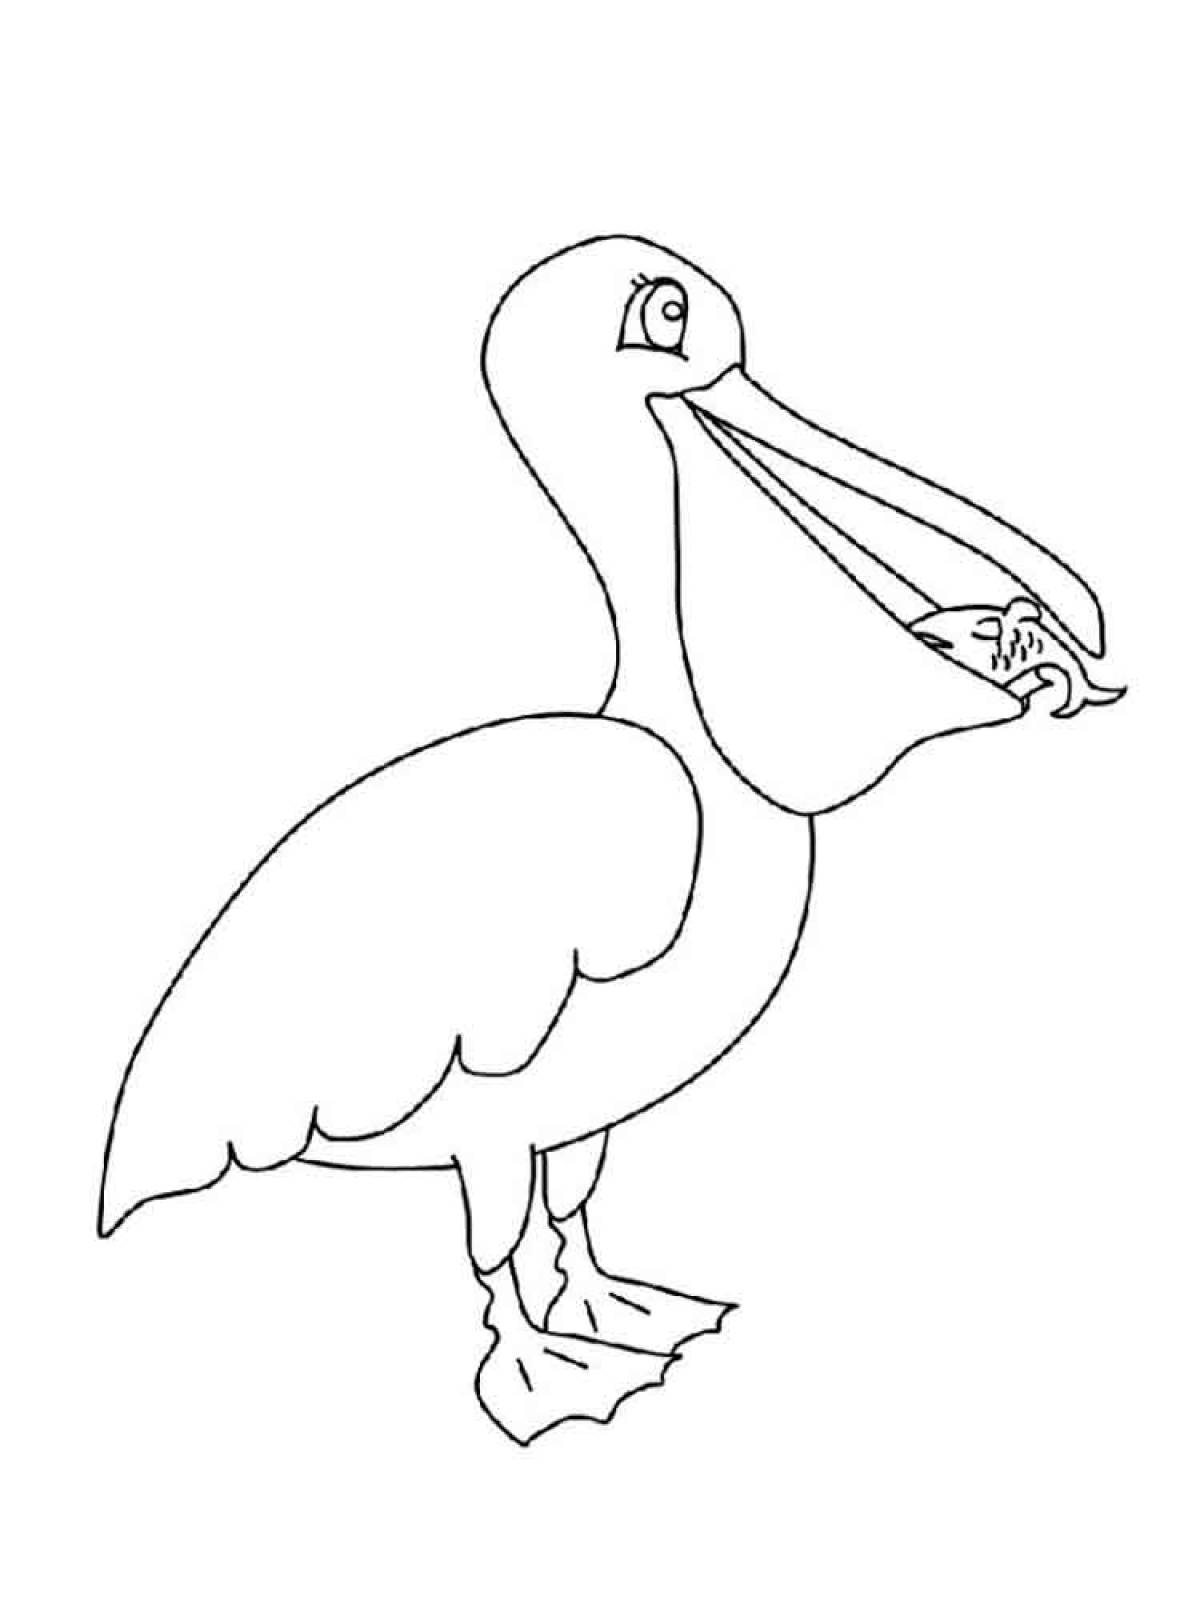 Pelican with prey